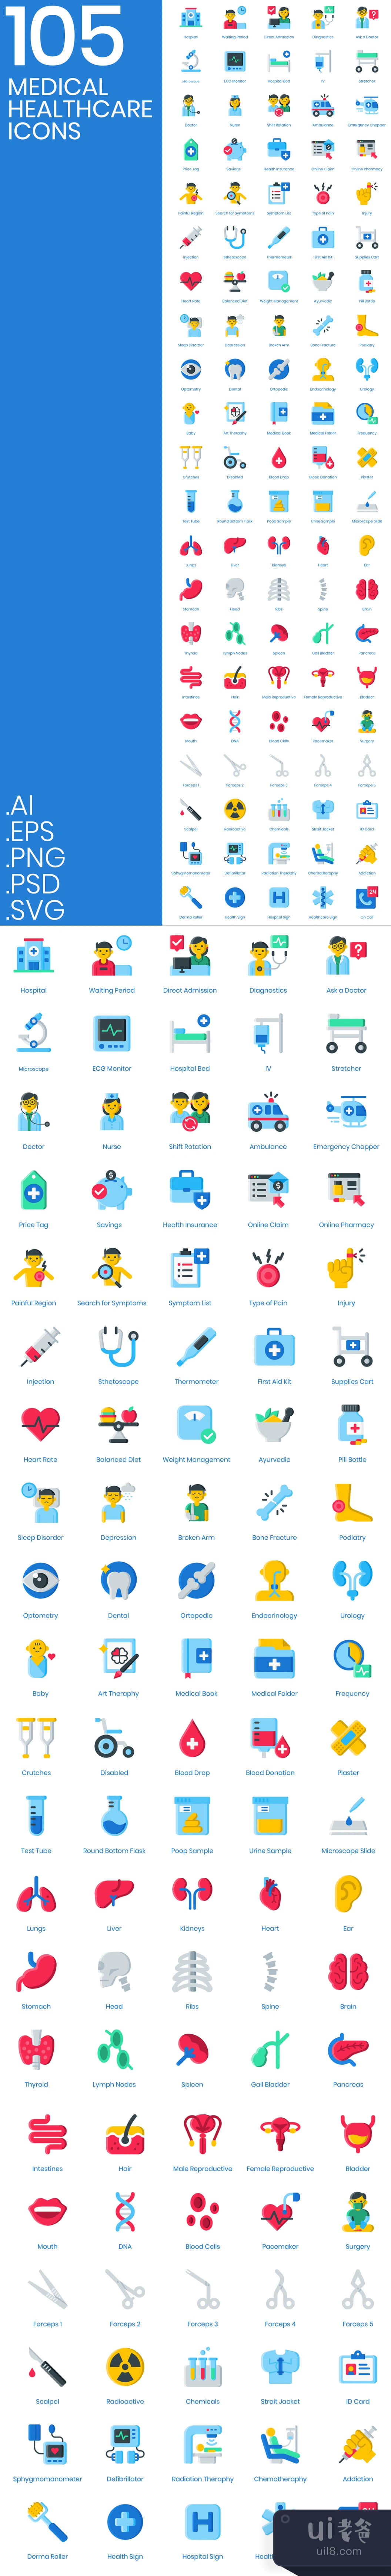 105个医疗卫生图标 (105 Medical Healthcare Icons)插图1